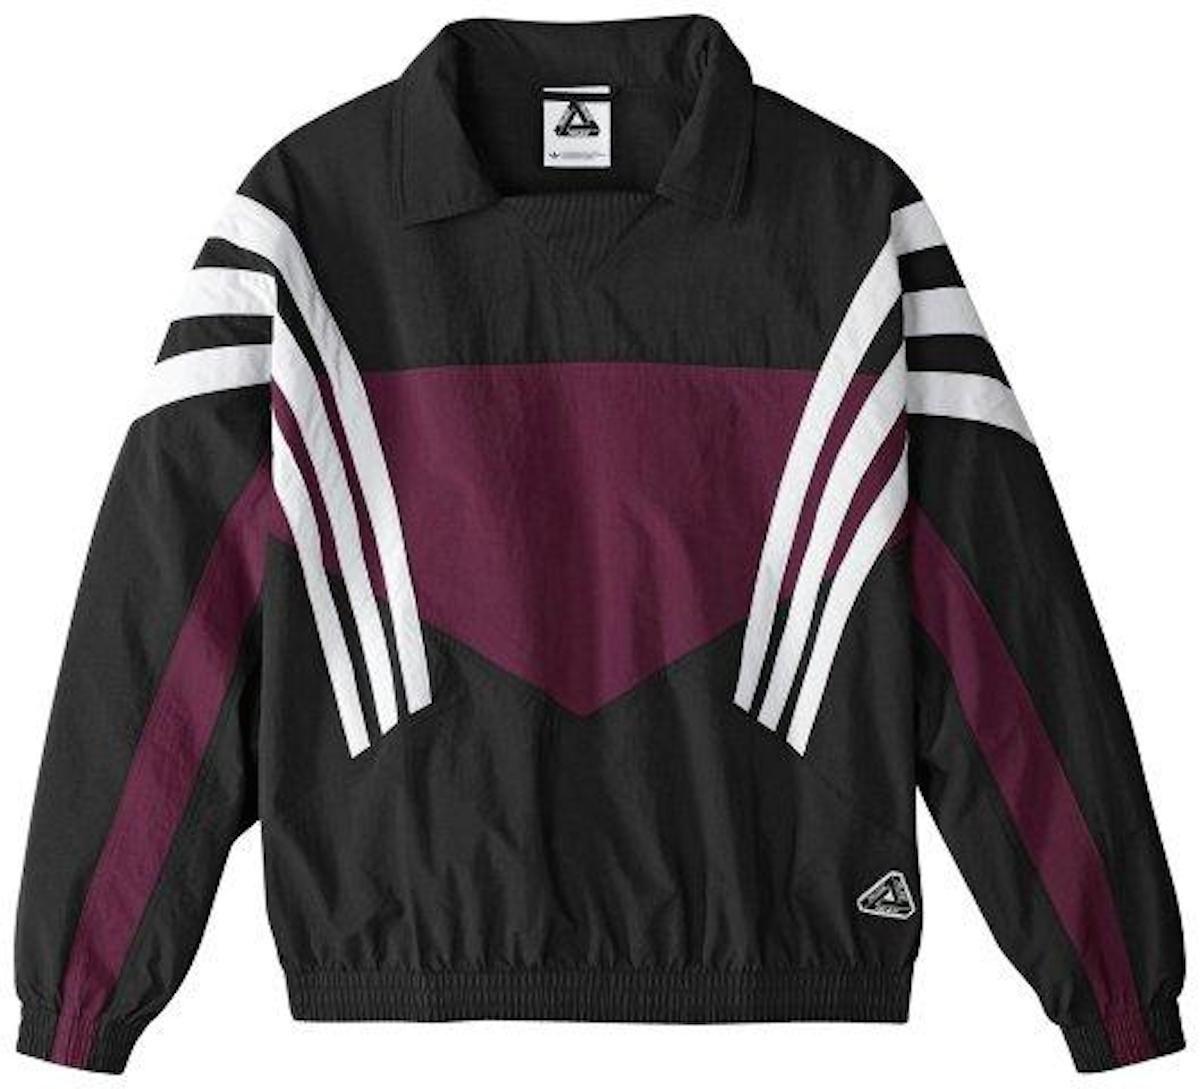 Adidas X Palace Clothing Logo - Adidas x Palace Track JAcket | Jackets | Pinterest | Adidas, Jackets ...